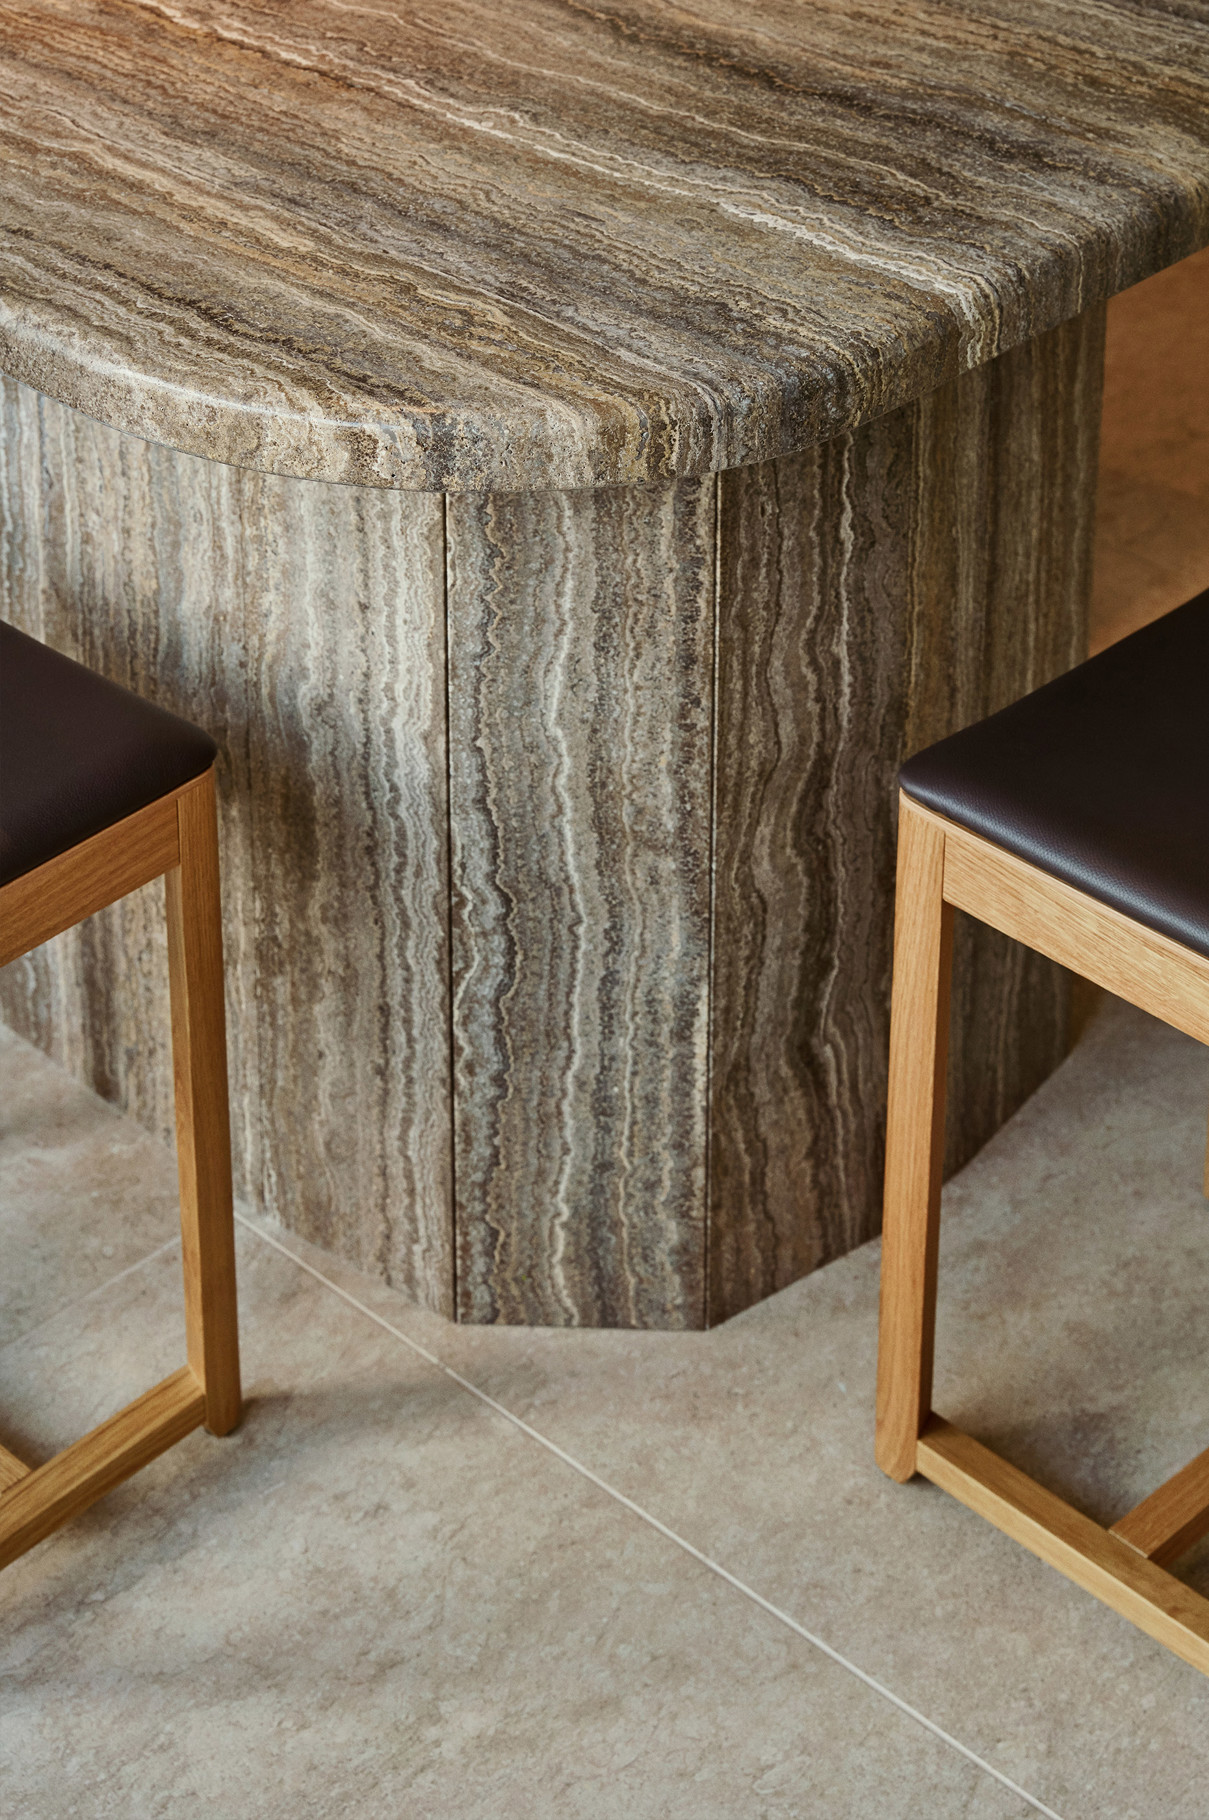 1174 Runo Hotel Porvoo Marble Bar Chairs Detail Interior Design